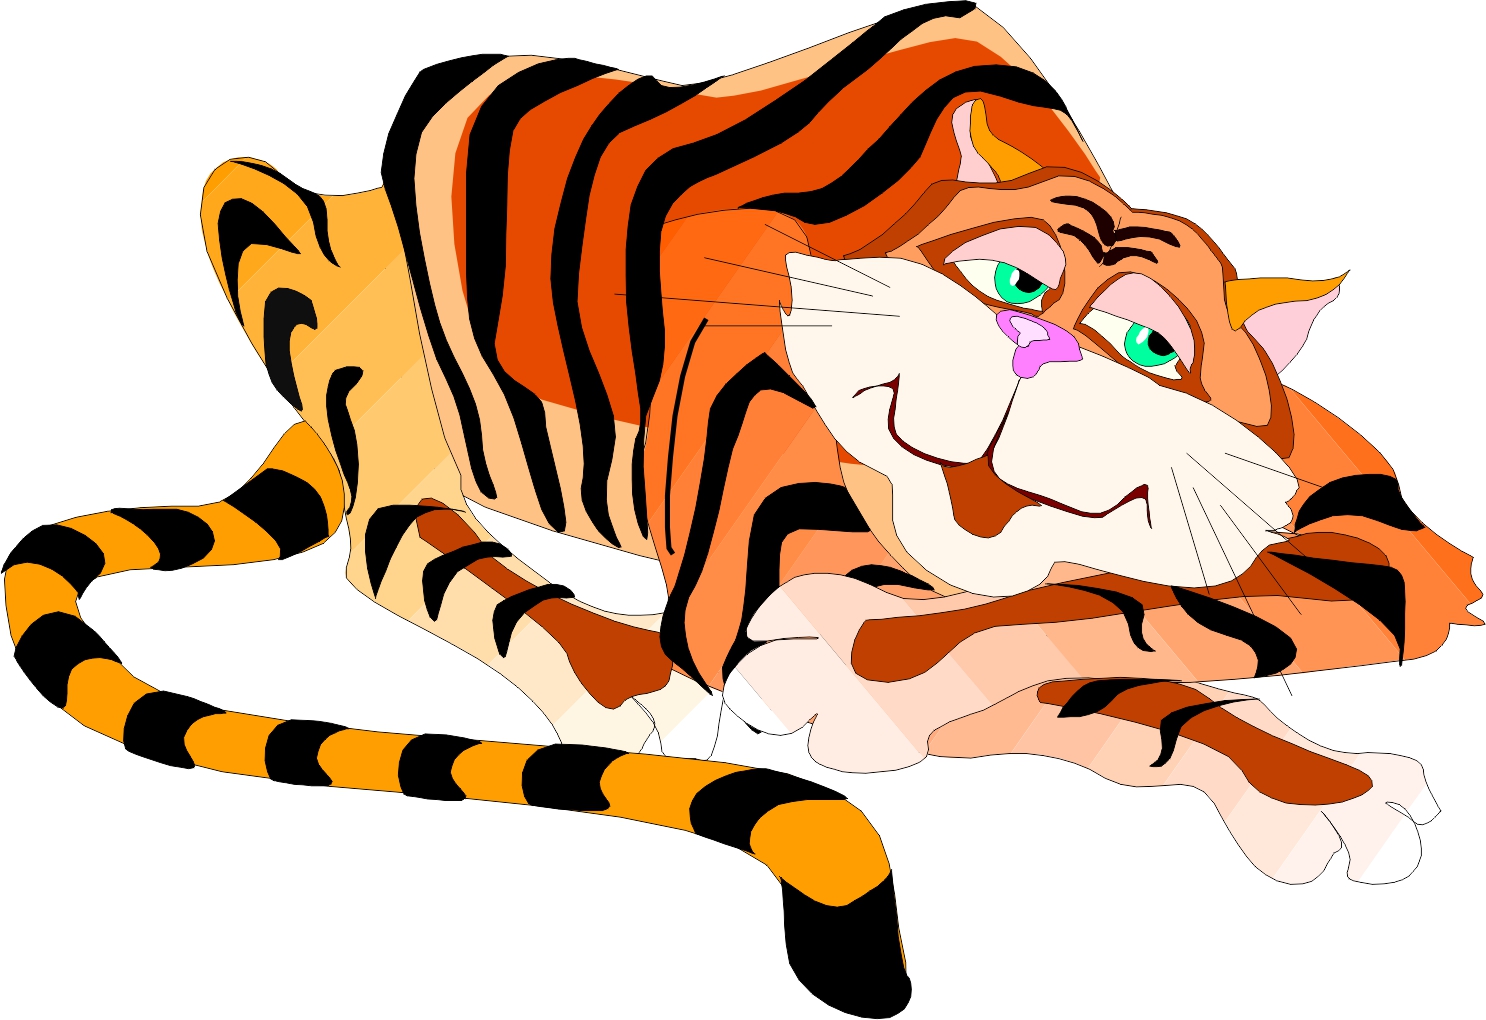 Tiger Images Cartoon - Desktop Backgrounds